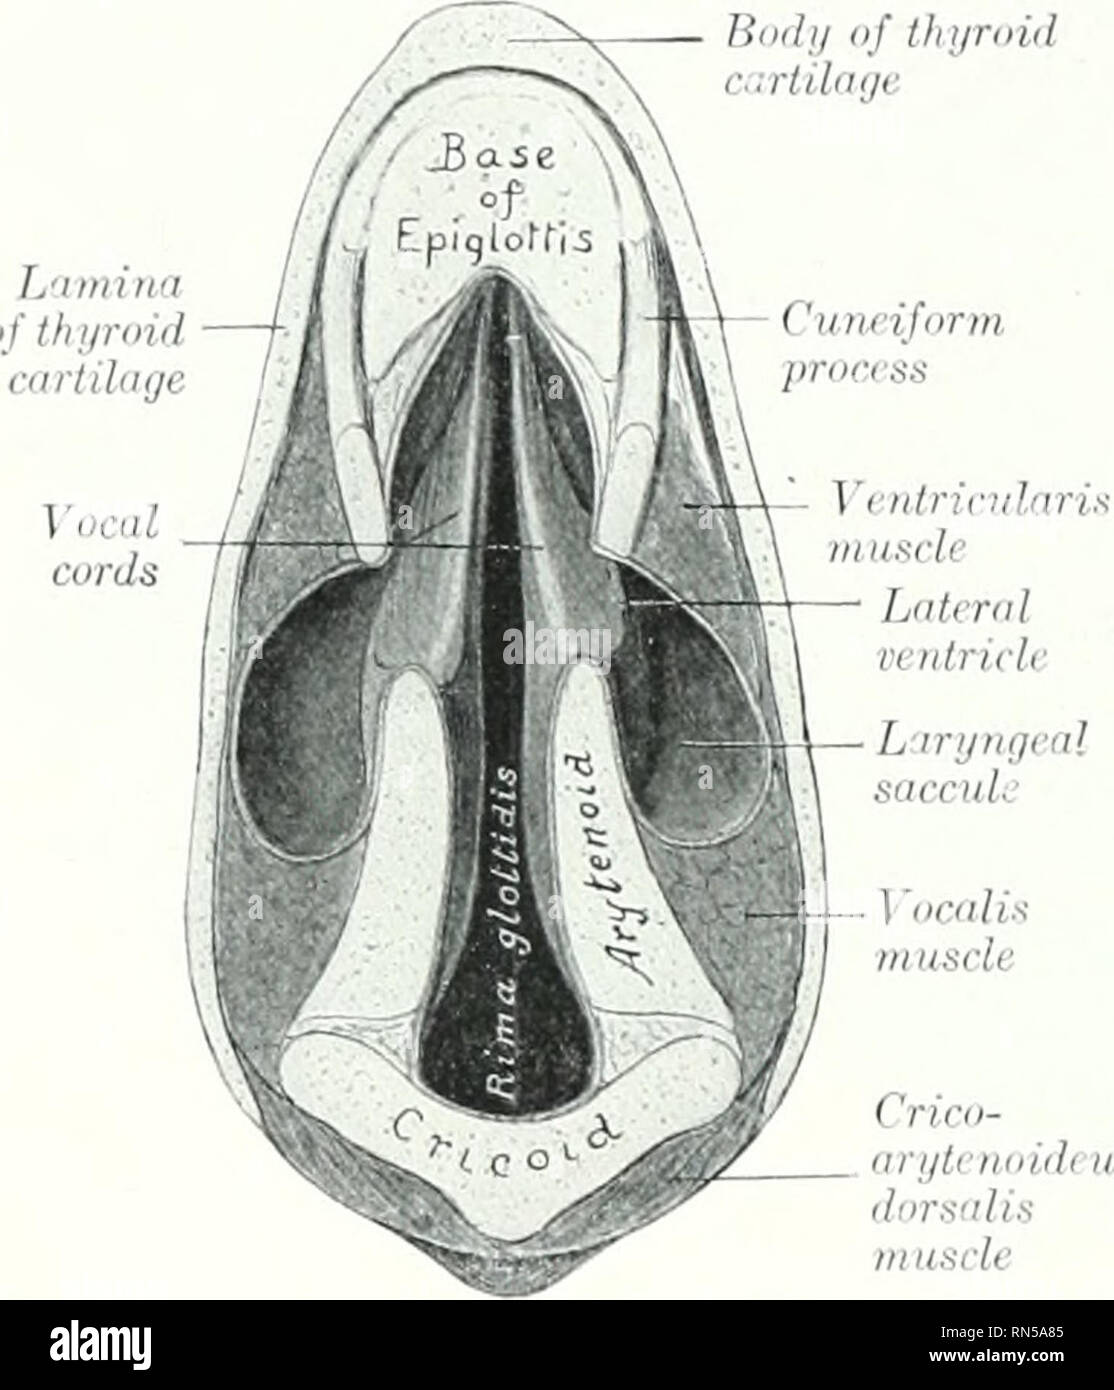 Die Anatomie der Haustiere. Veterinär Anatomie. 5 iJ ATMUNGSORGANE DES  PFERDES Das Vestibül des Kehlkopfs (Vestibulum IarJ^ lgis) ist der Teil des  Hohlraums wliich cxtonds von der Wurzelspitze auf die Stimmbänder.